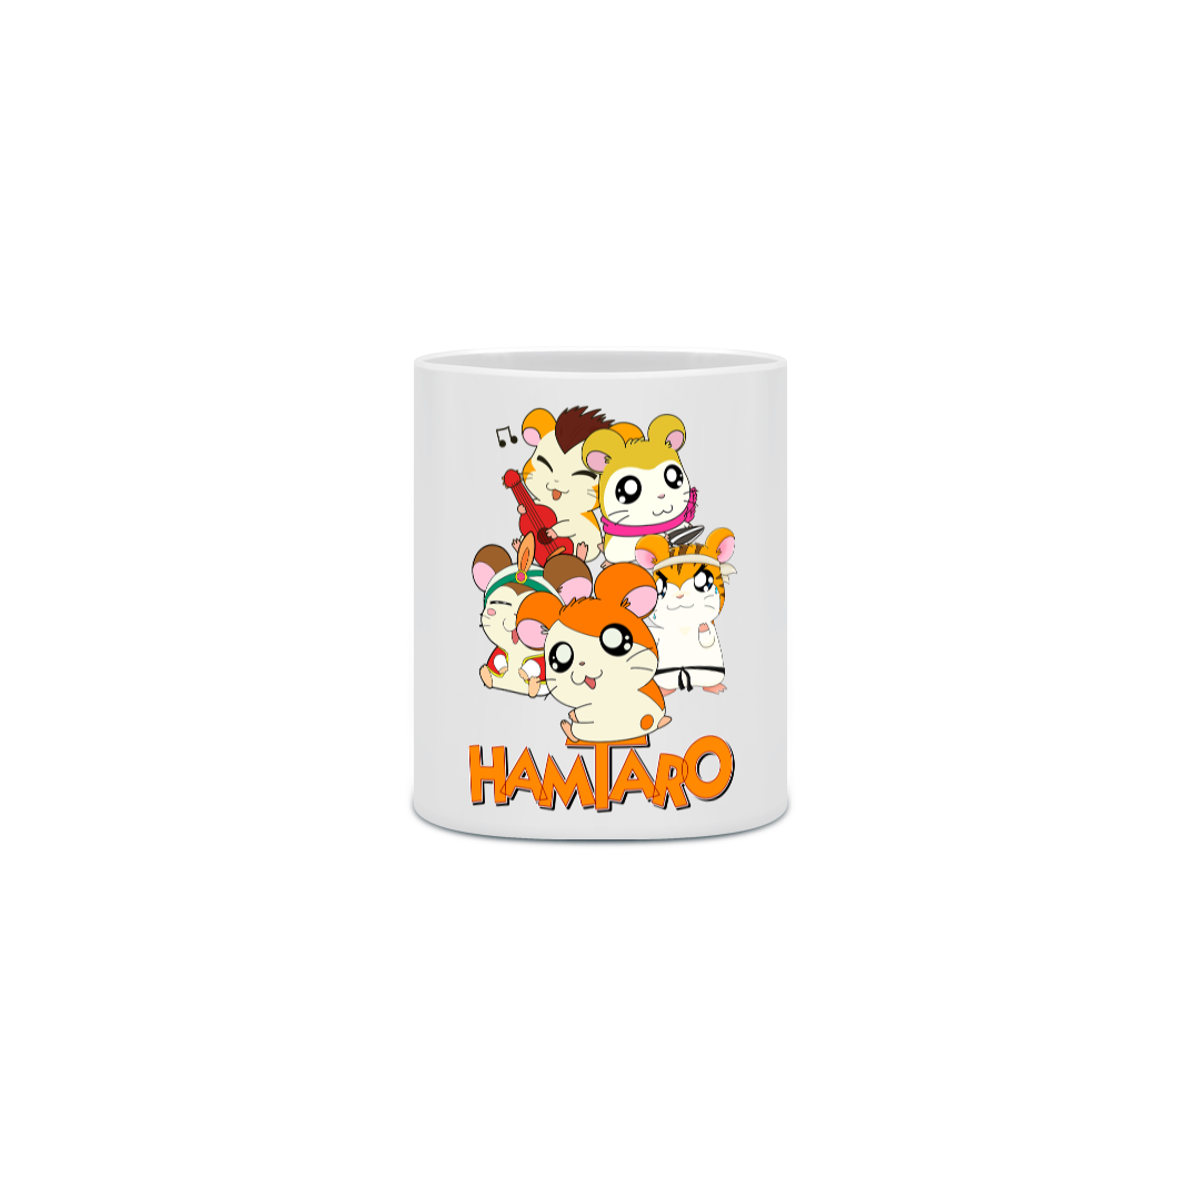 Nome do produto: Caneca Hamtaro 5